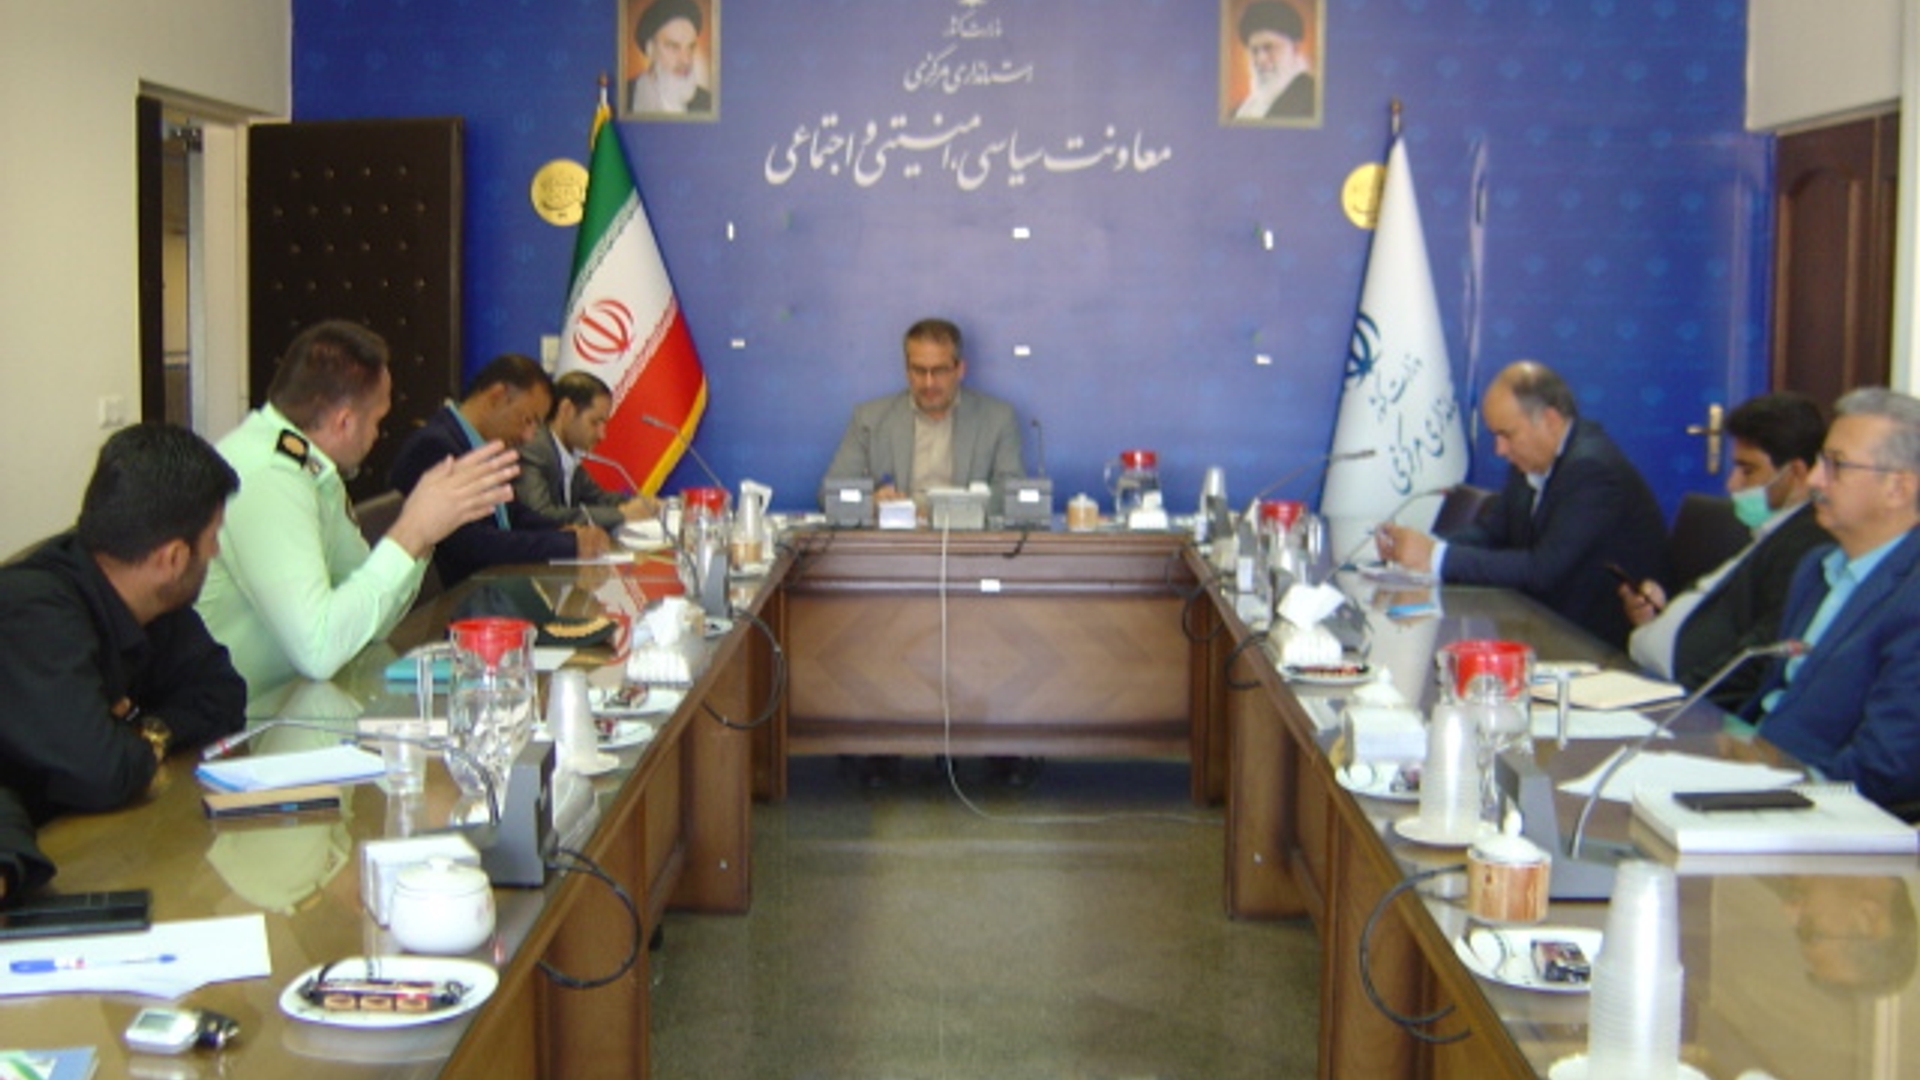 جلسه کمیته نظارت بر فرآیند و تهیه و توزیع مواد شیمیایی و زیستی خطرناک استان در مورخ 1401-6-10 به ریاست جناب آقای رحیمی تبار برگزار گردید.